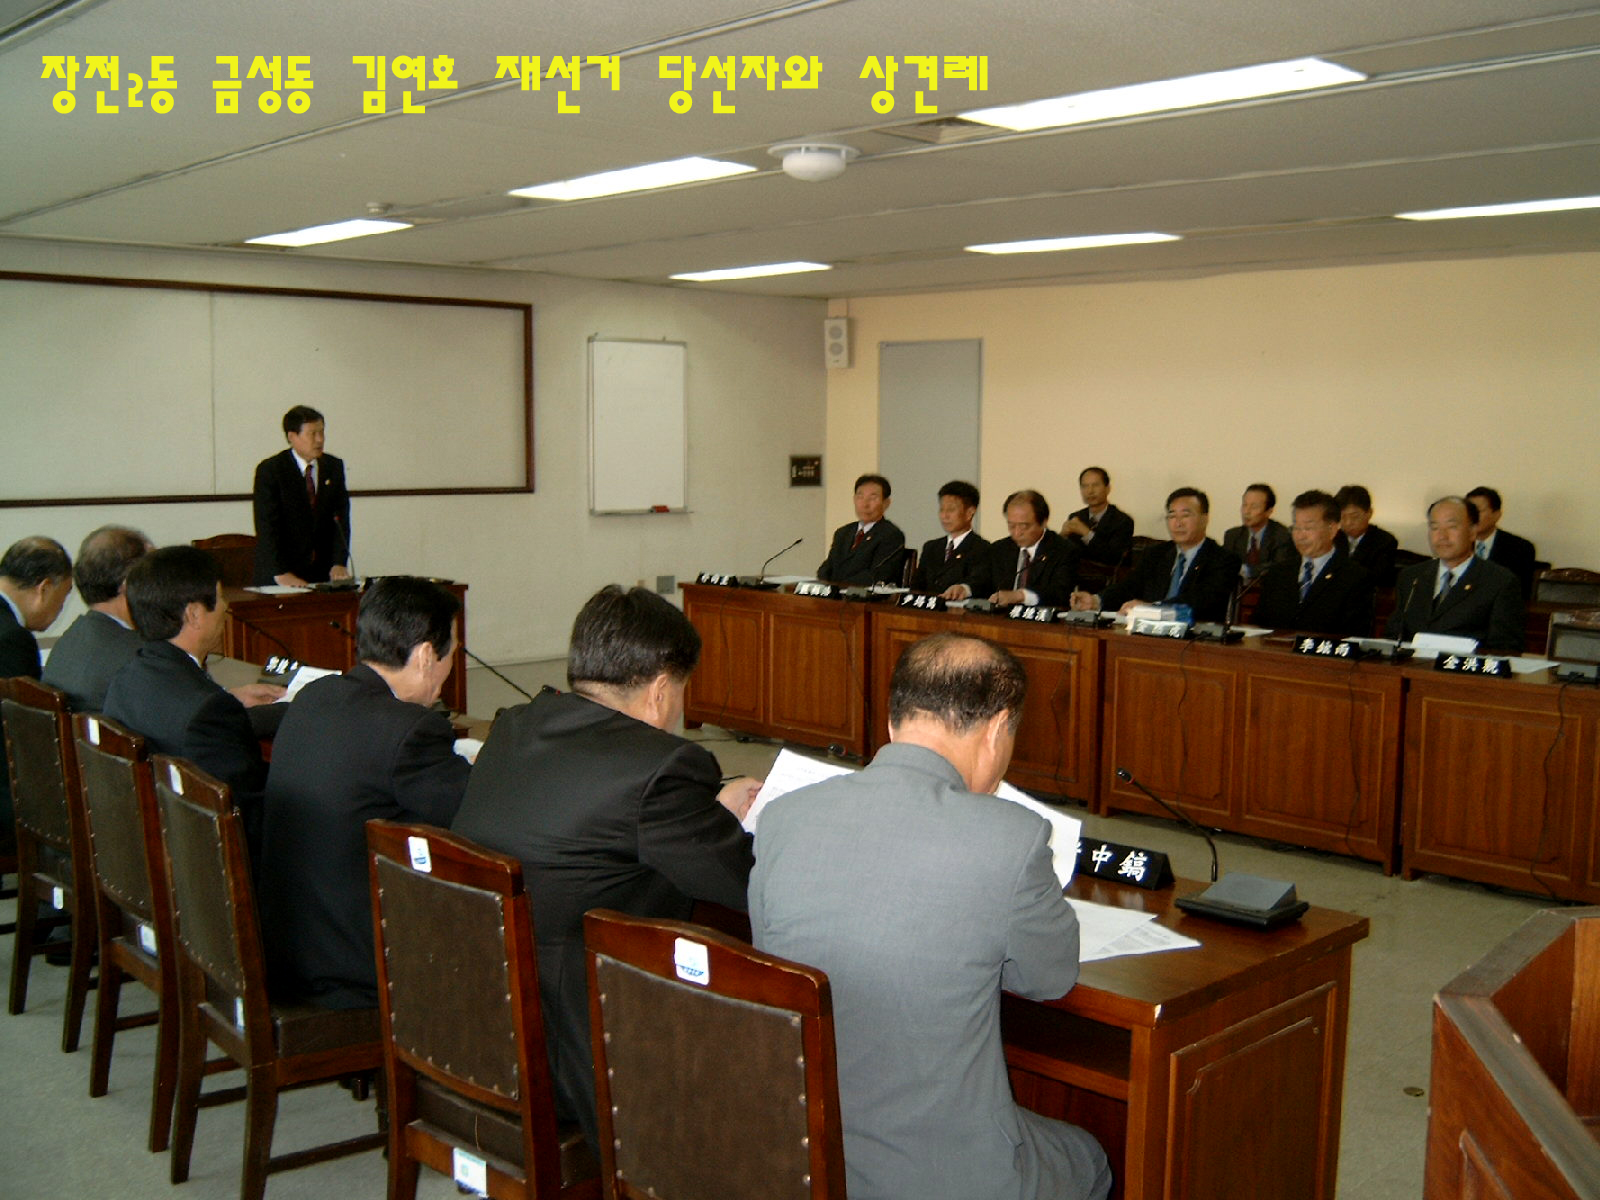 김연호 재선거당선의원(장전2동·금성동 선거구)과 상견례